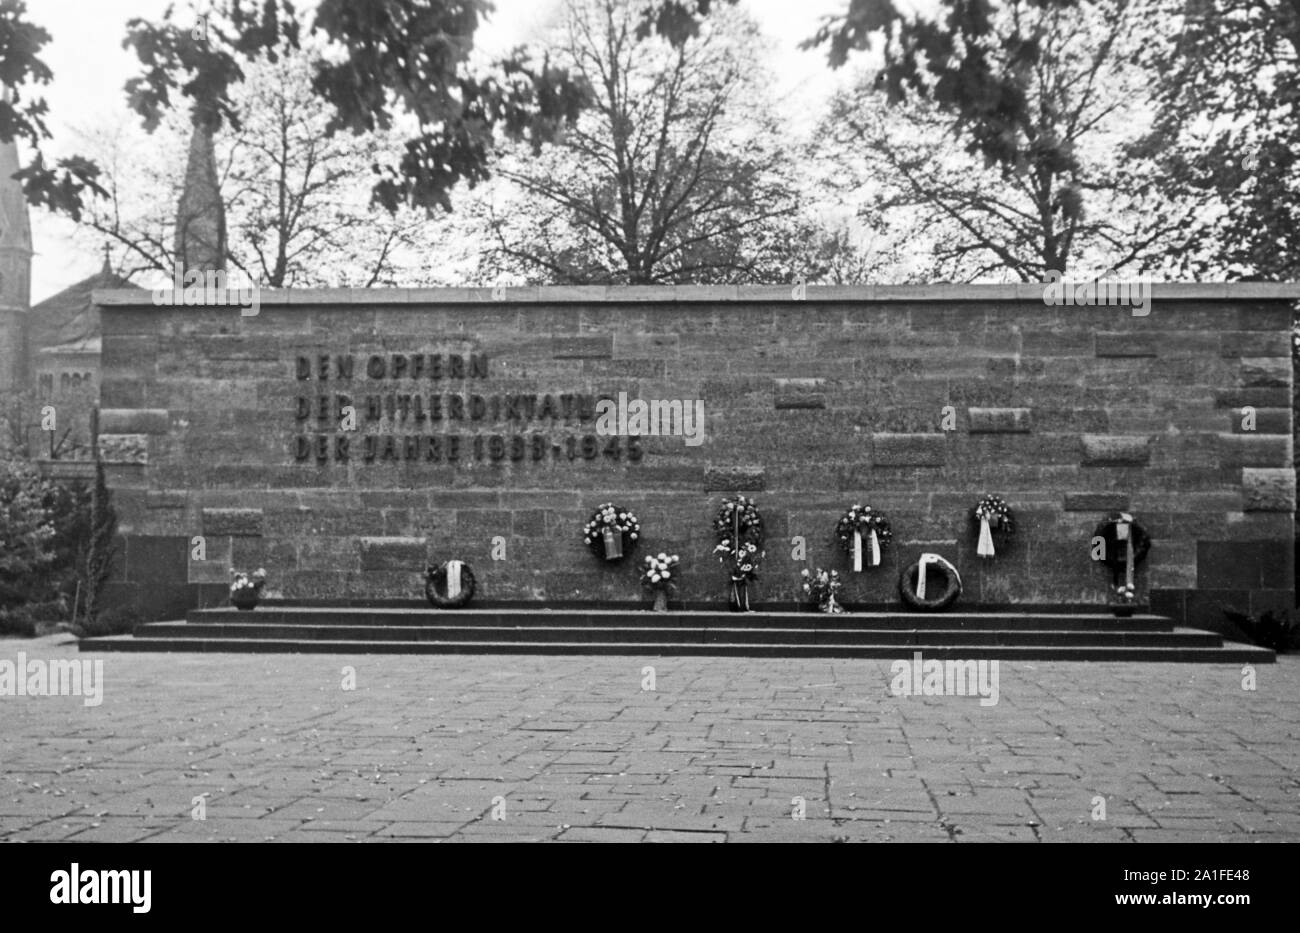 Gedenkstätte für die Opfer der Hitlerdiktatur der Jahre 1933 bis 1945 auf einem Friedhof in Berlin, Deutschland 1962. Memorial wall for the victims of Hitler's dictatorship between 1933 an 1945 in a Berlin cemetery, Germany 1962. Stock Photo